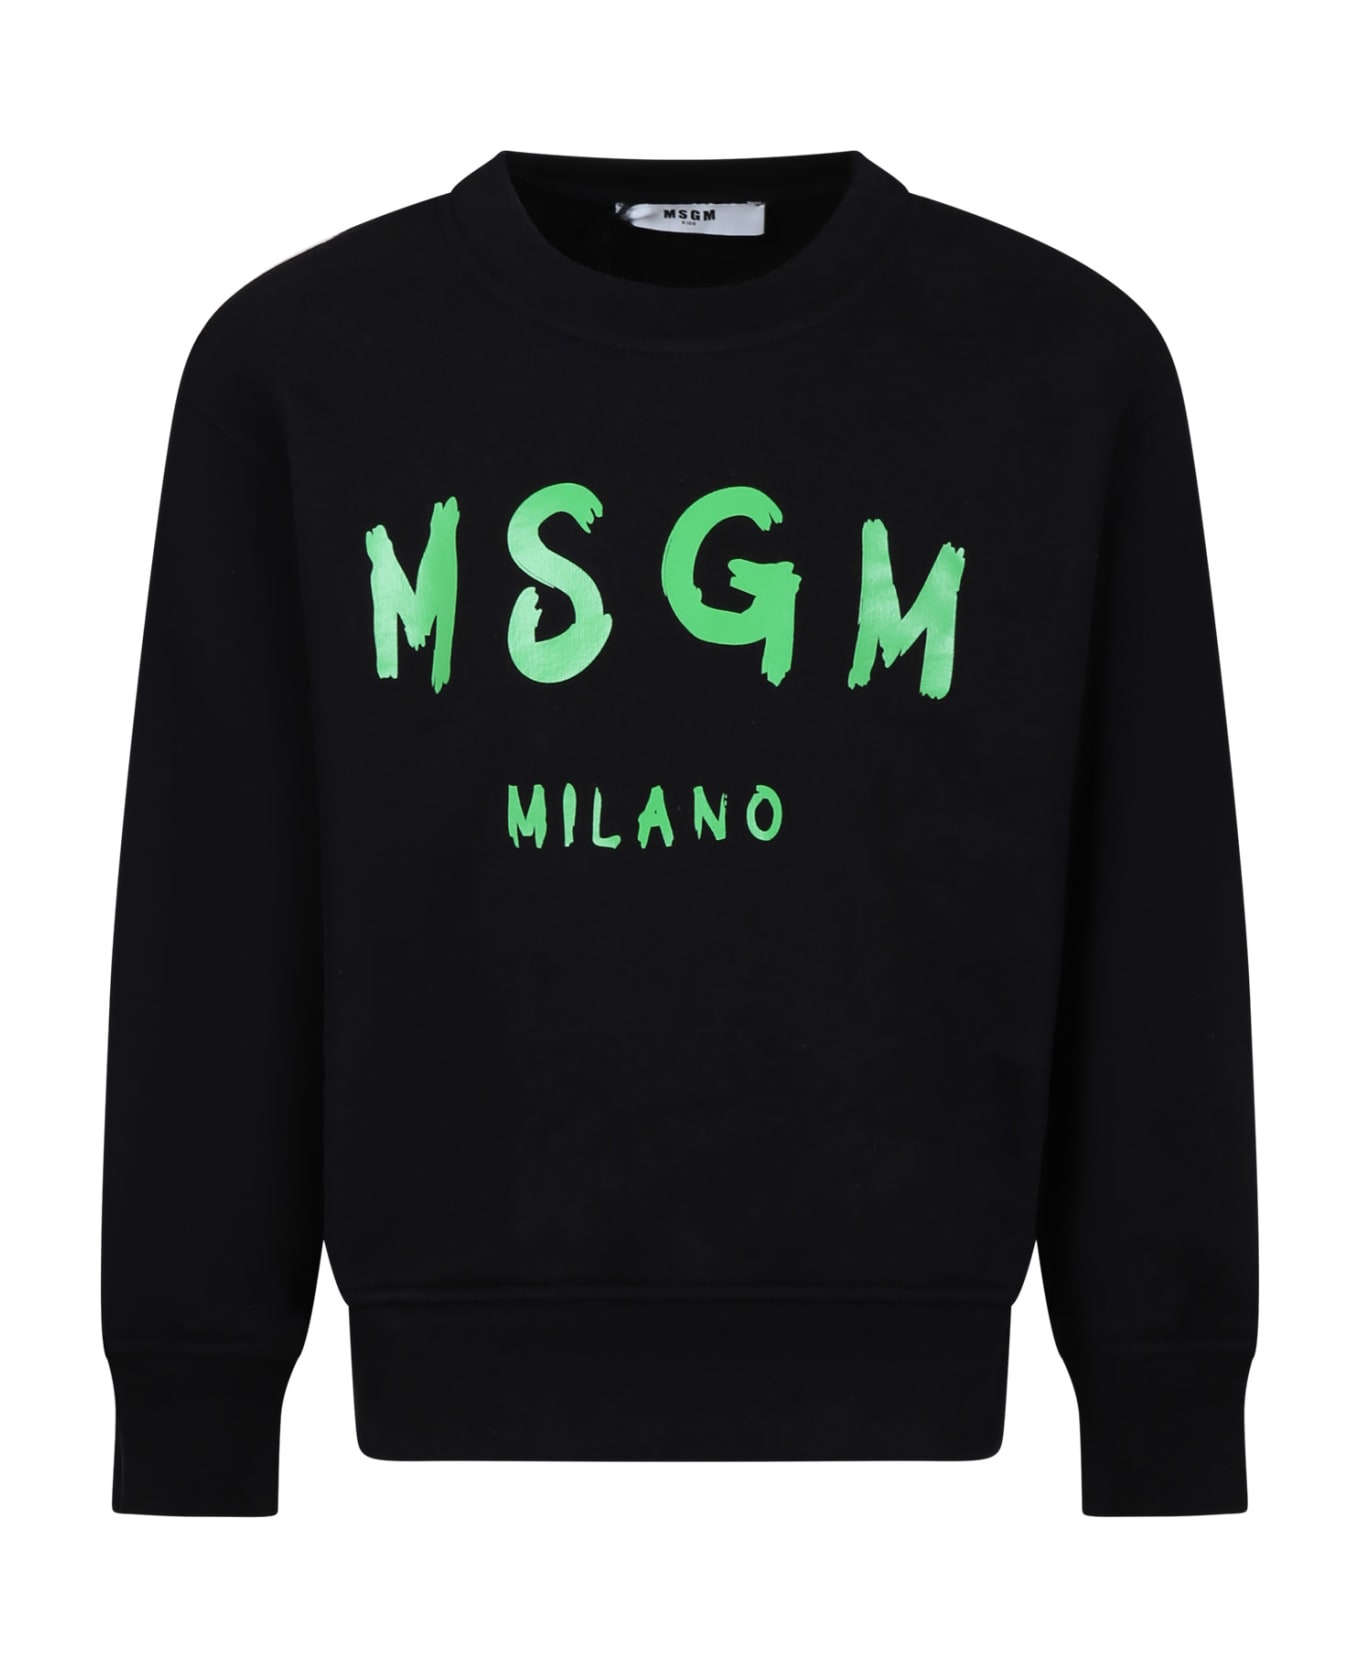 MSGM Black Sweatshirt For Kids With Green Logo - Black ニットウェア＆スウェットシャツ